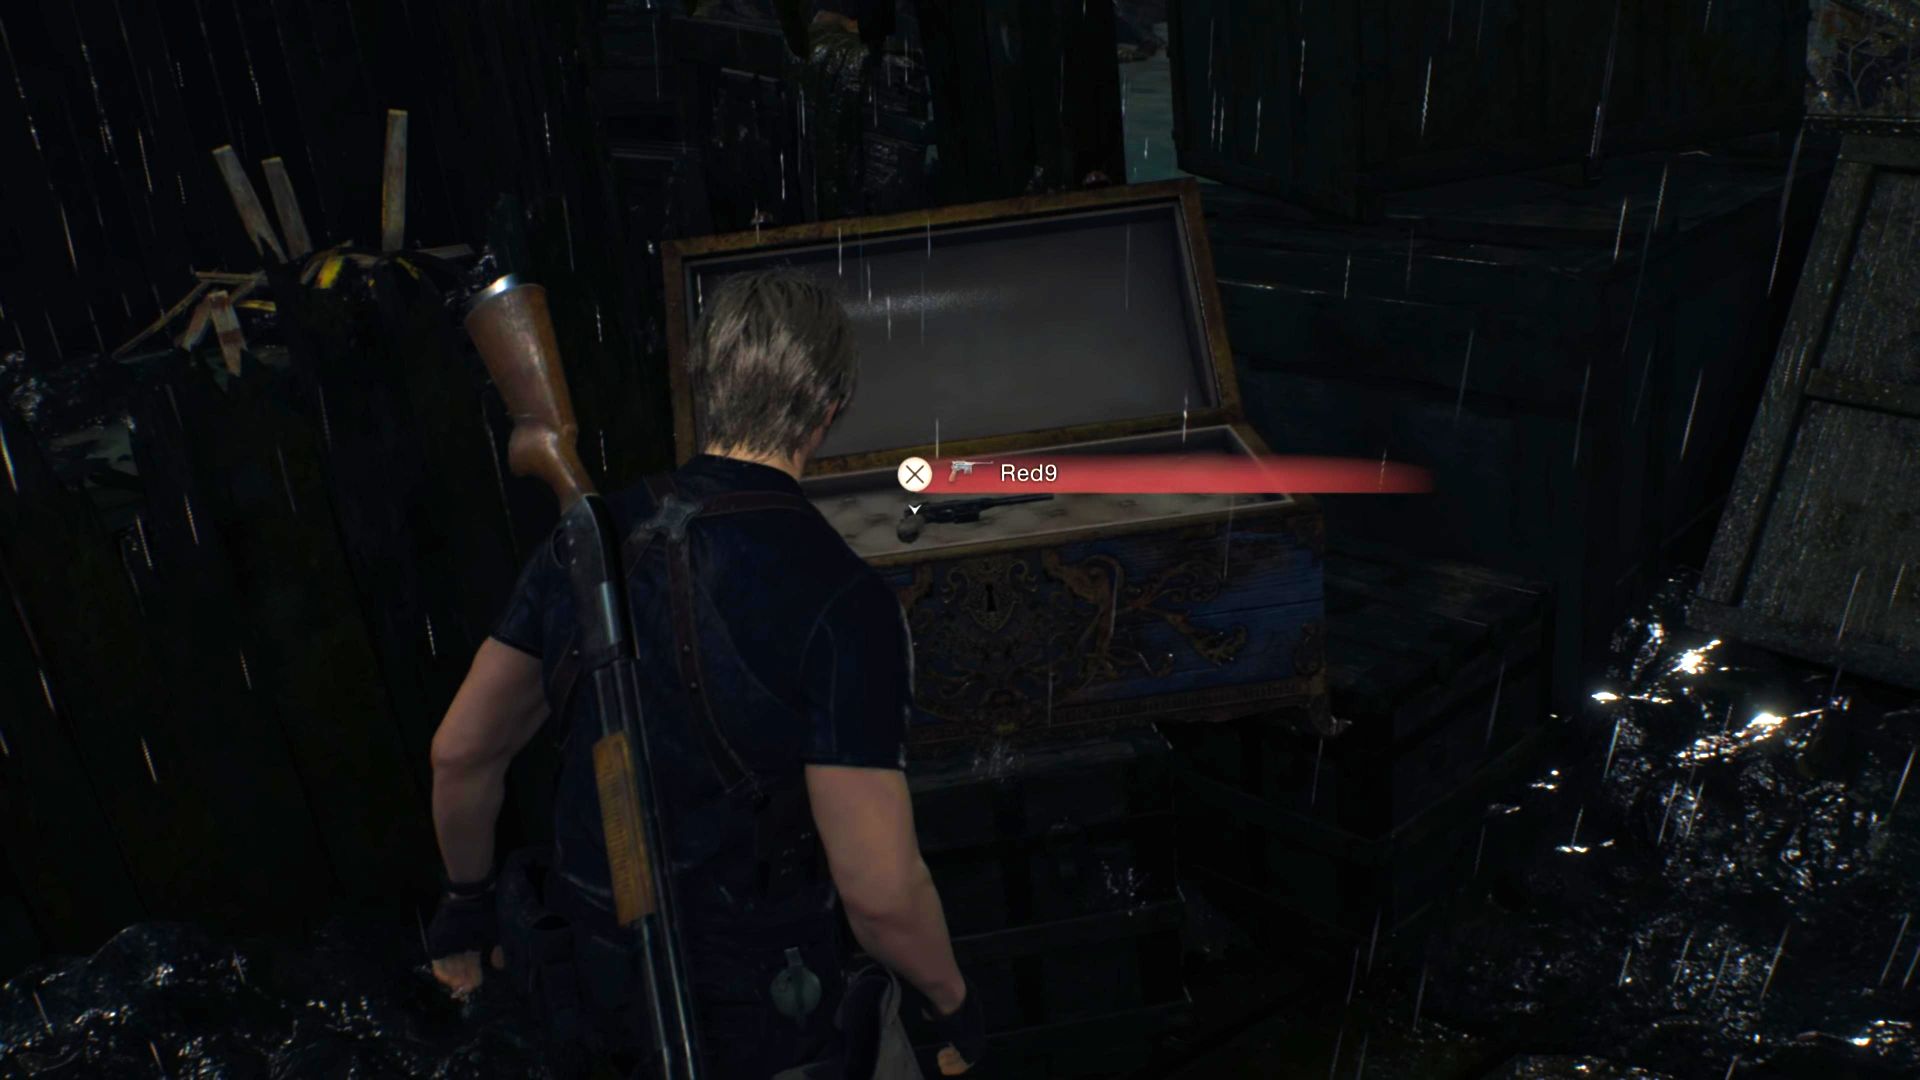 Resident Evil 4 Remake Red9 Vị trí: Leon đứng trước rương màu xanh chứa Red9 trên boong của chiếc thuyền đổ nát ở giữa hồ